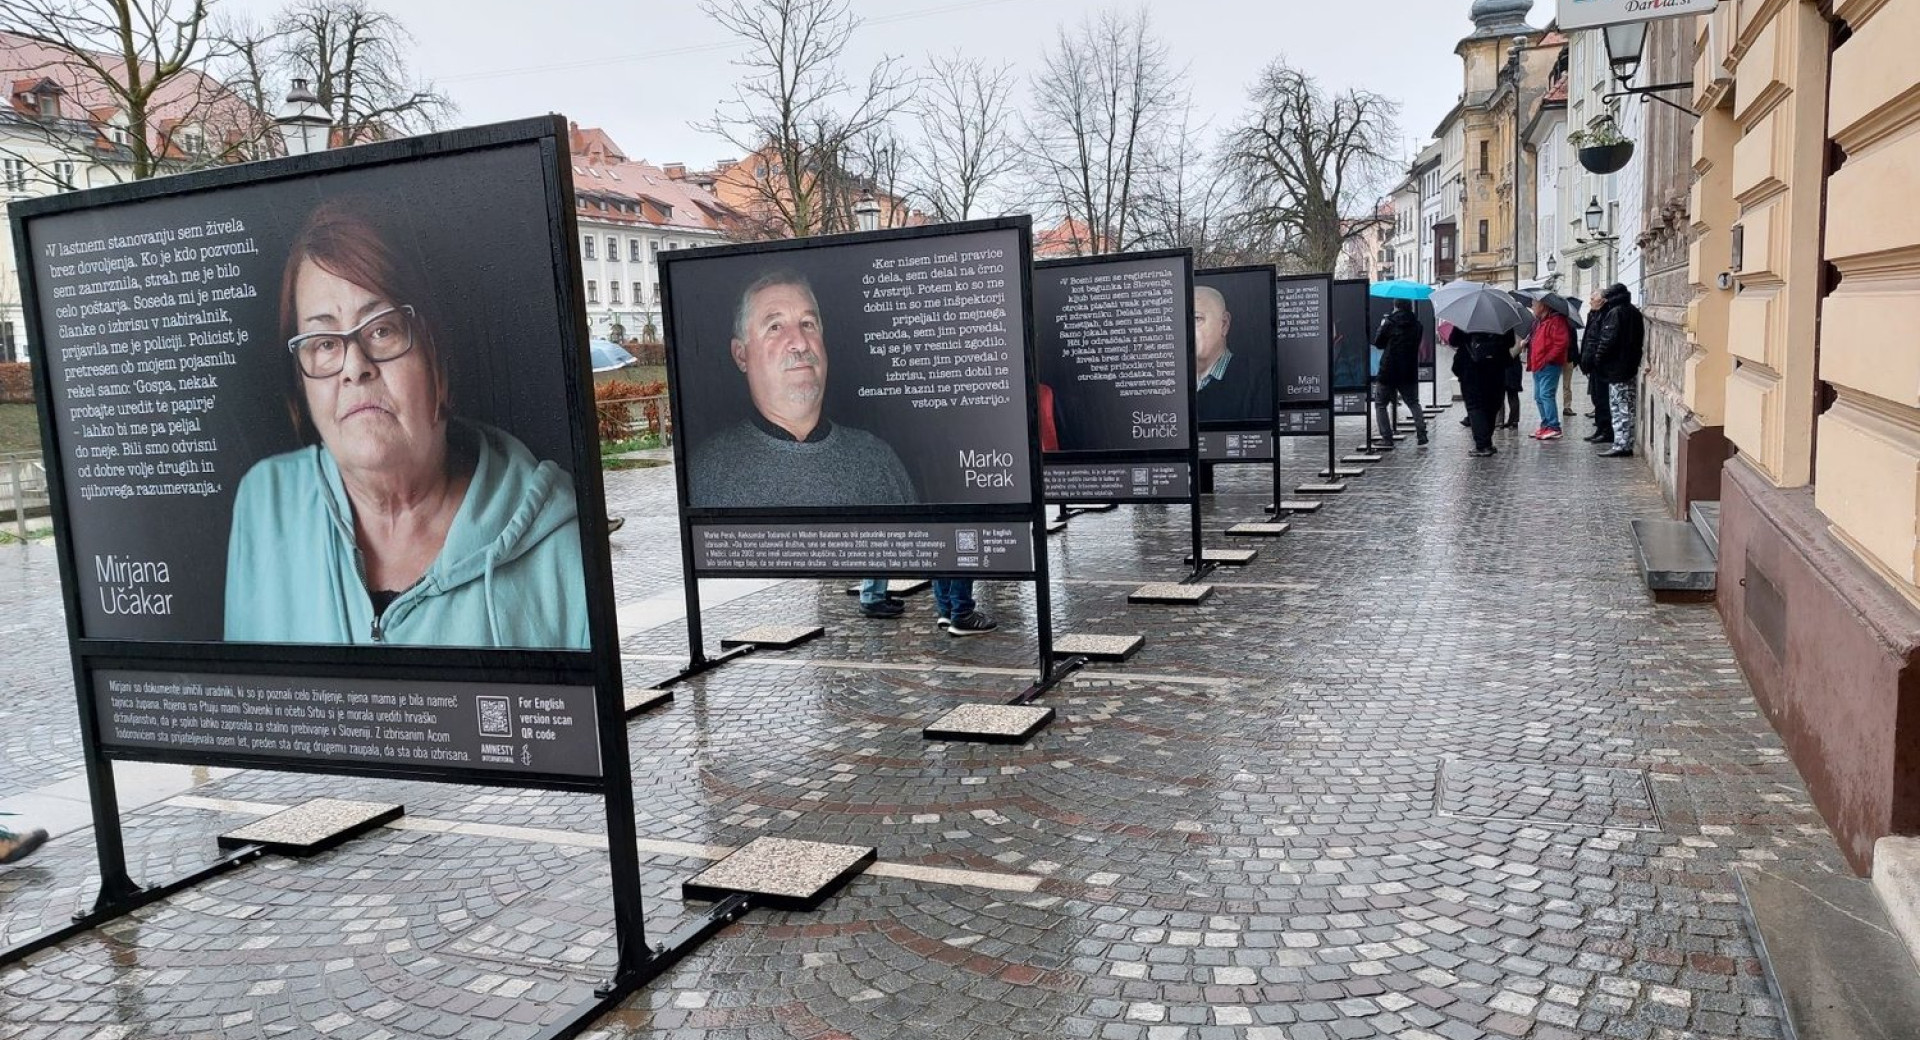 Fotografska razstava na Gallusovem nabrežju v Ljubljani o izbrisanih »31 let s(r)amote«; do 17. aprila 2023